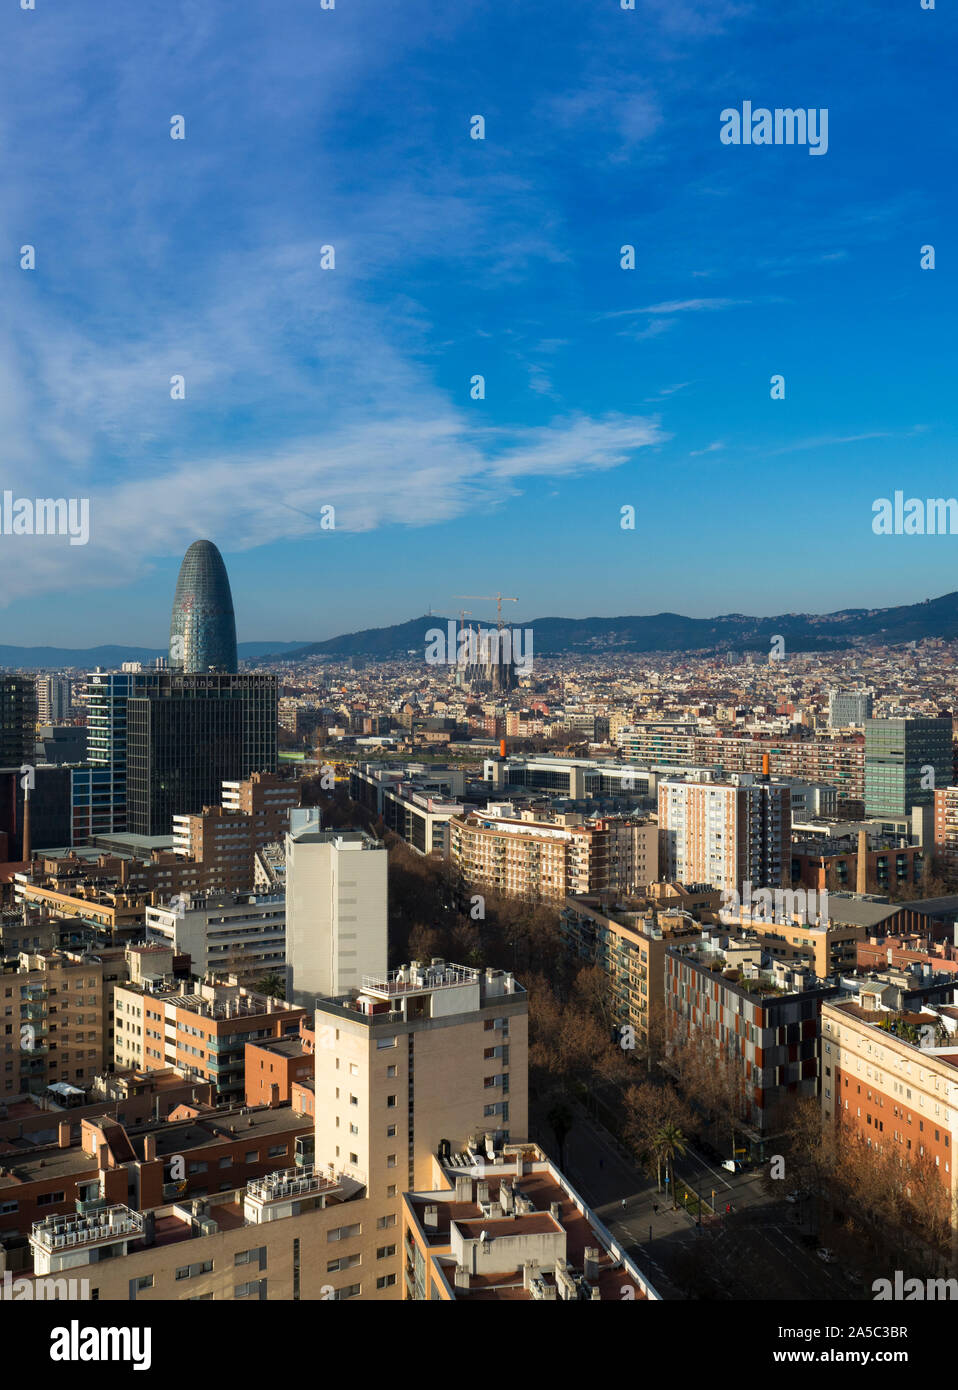 Ville de Barcelone Vue urbaine avec des sites célèbres Torre gloires et s'élevant au-dessus de la Sagrada Familia - Barcelone, Catalogne, Espagne Banque D'Images